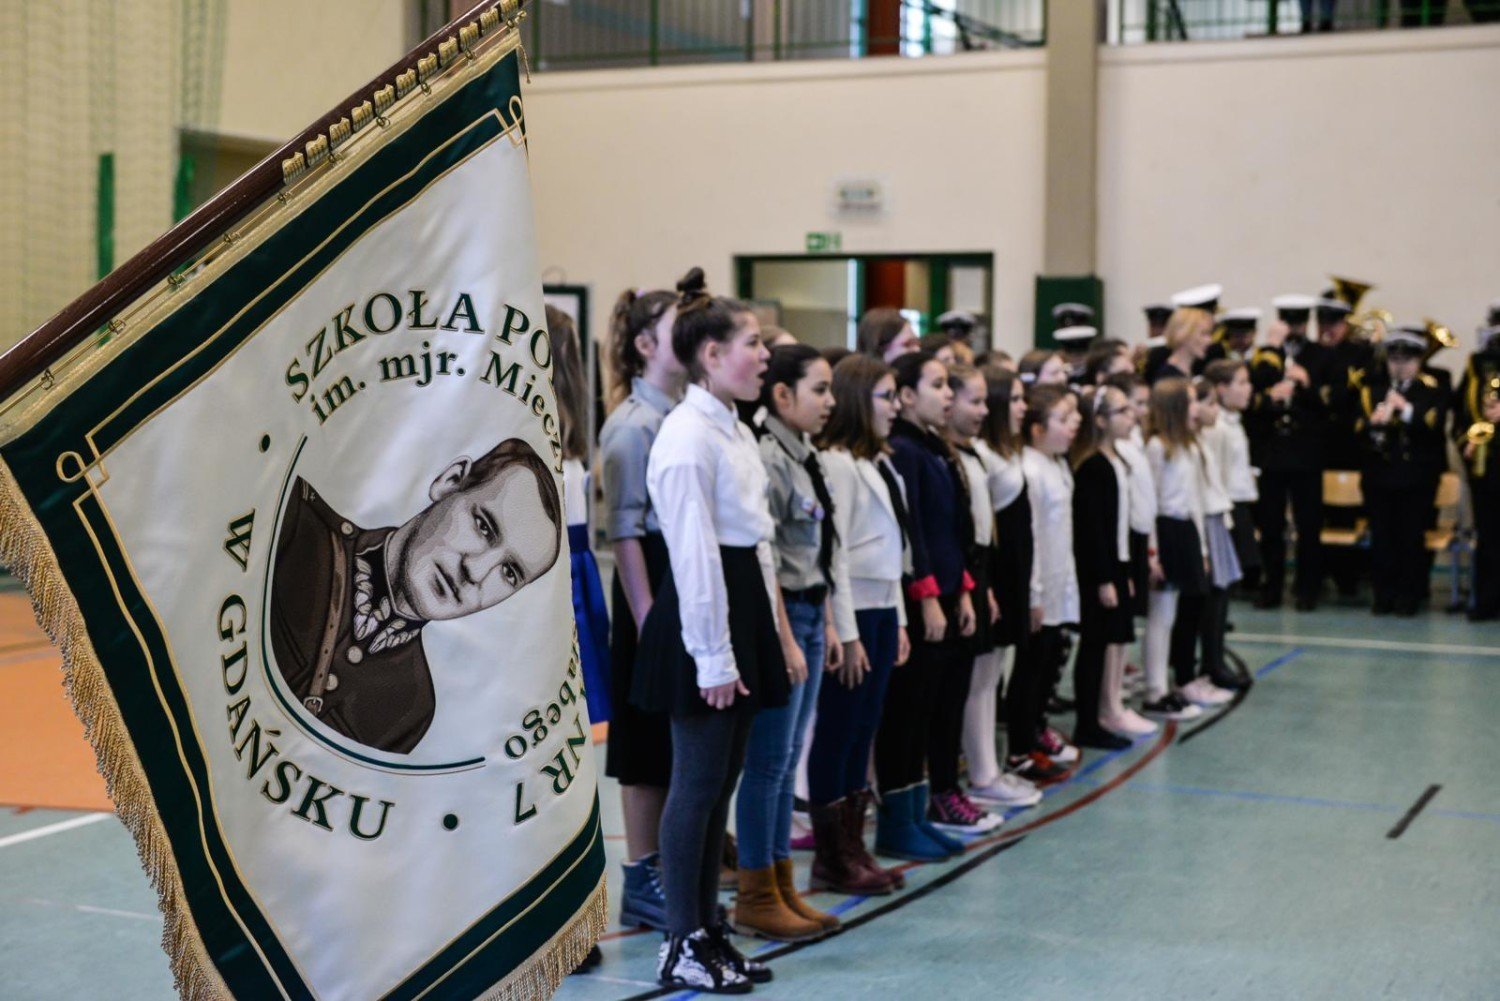 Szkoła Podstawowa Nr 7 Gdańsk Szkoła Podstawowa nr 7 w Gdańsku otrzymała imię majora Mieczysława